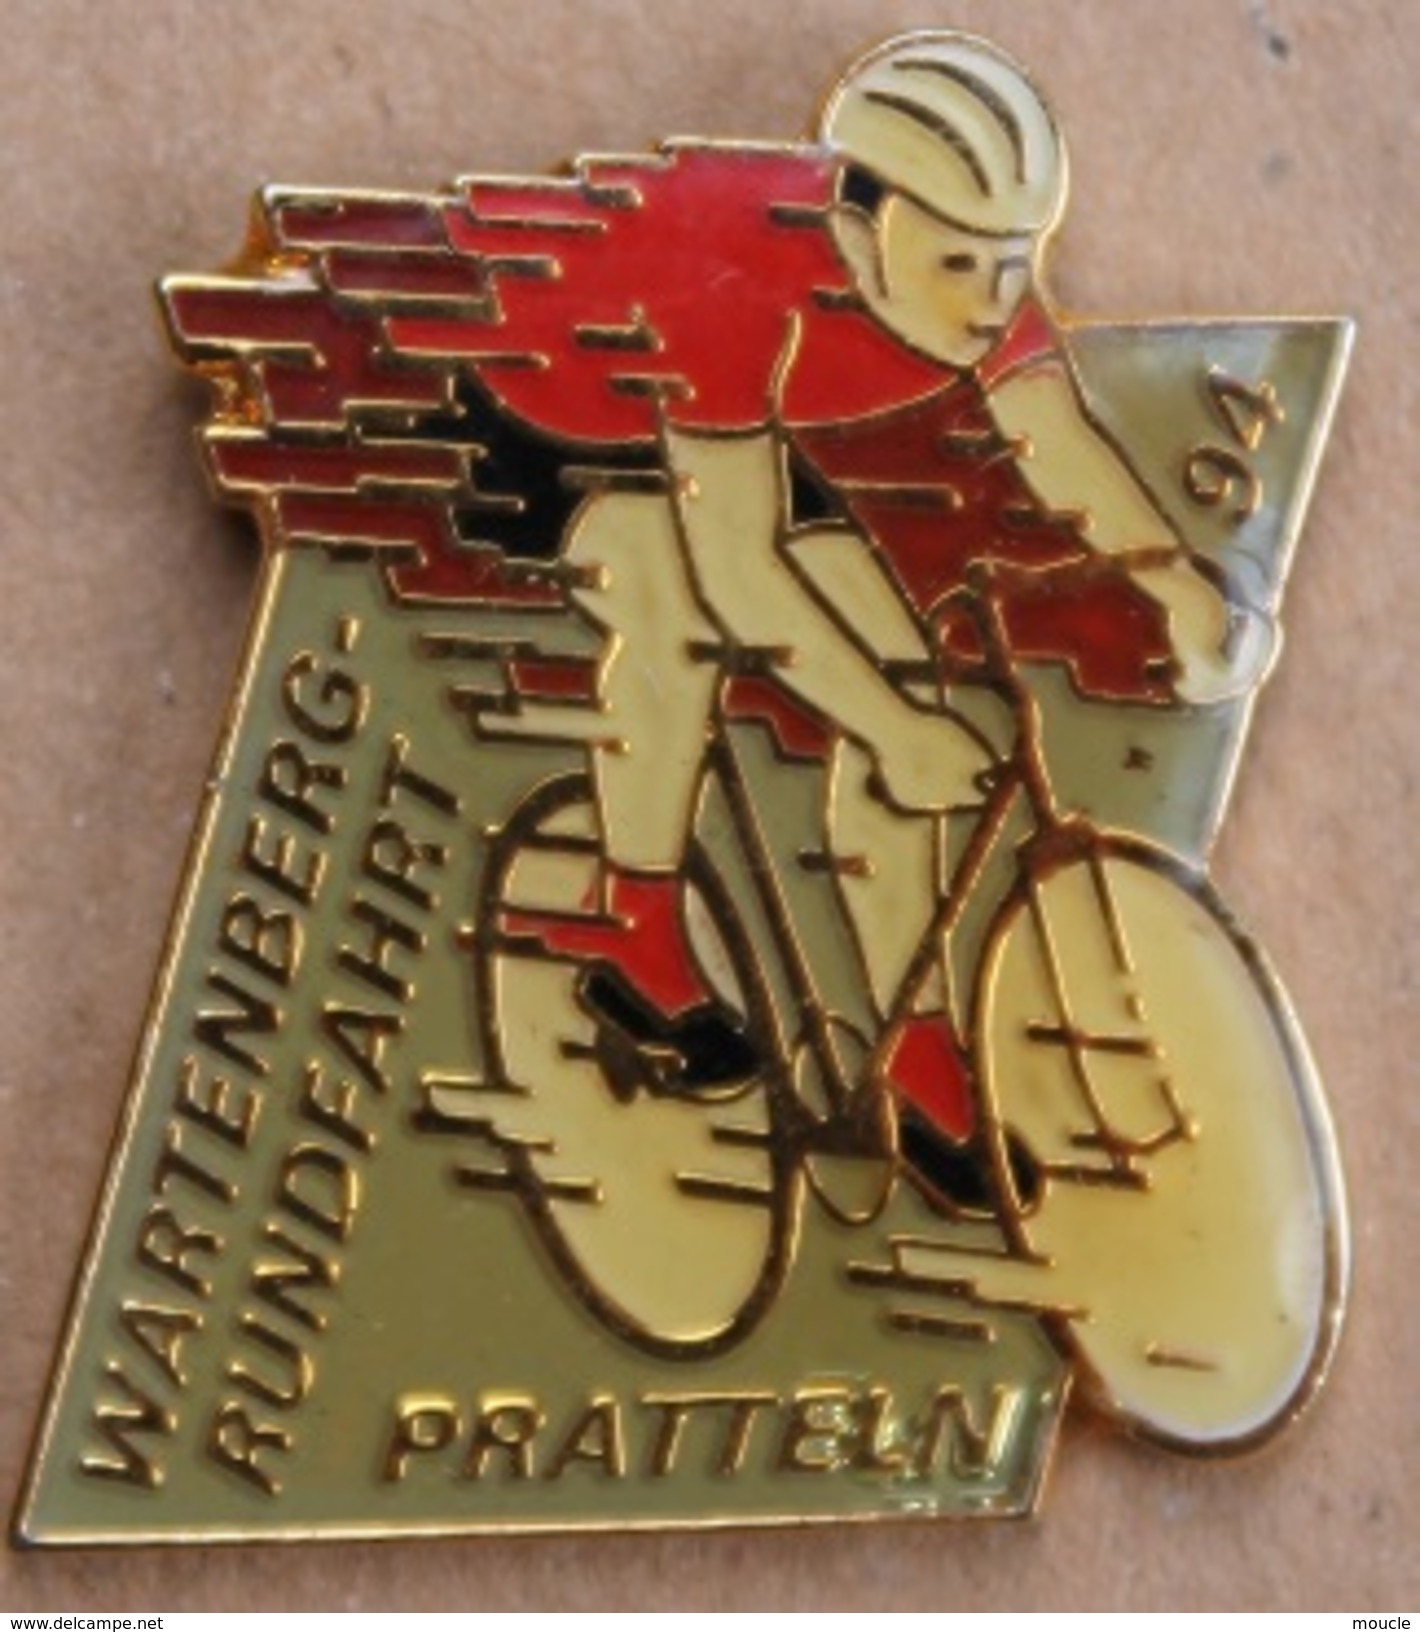 CYCLISME - VELO - CYCLISTE - WARTENBERG RUNDFAHRT - PRATTELN 94 - BIKE -    (17) - Cyclisme